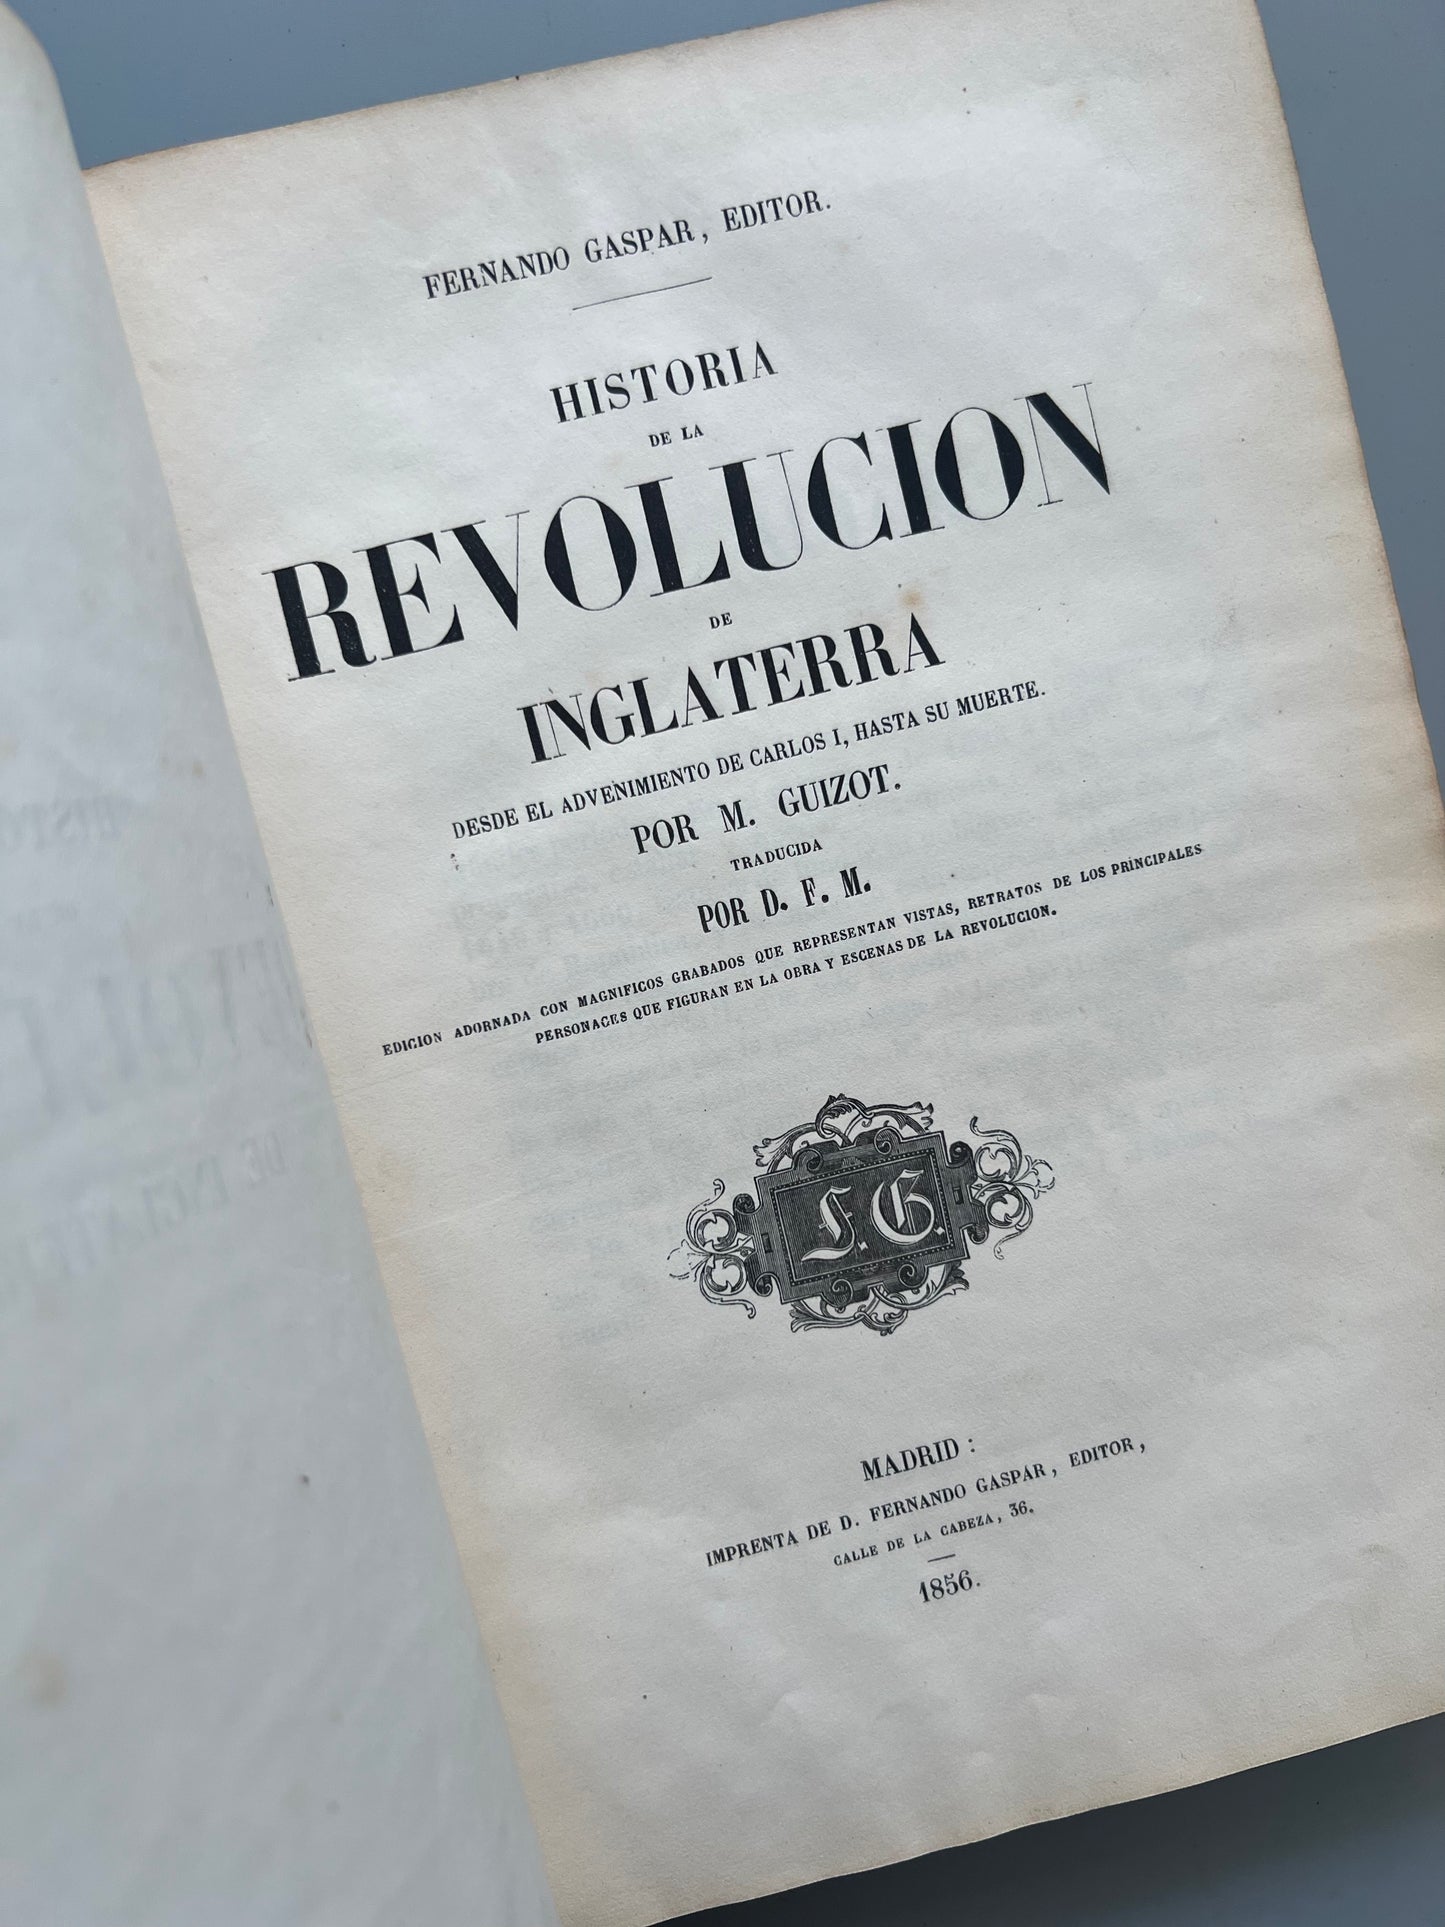 Historia de la revolución de Inglaterra, M. Guizot - Fernando Gaspar editor, 1856